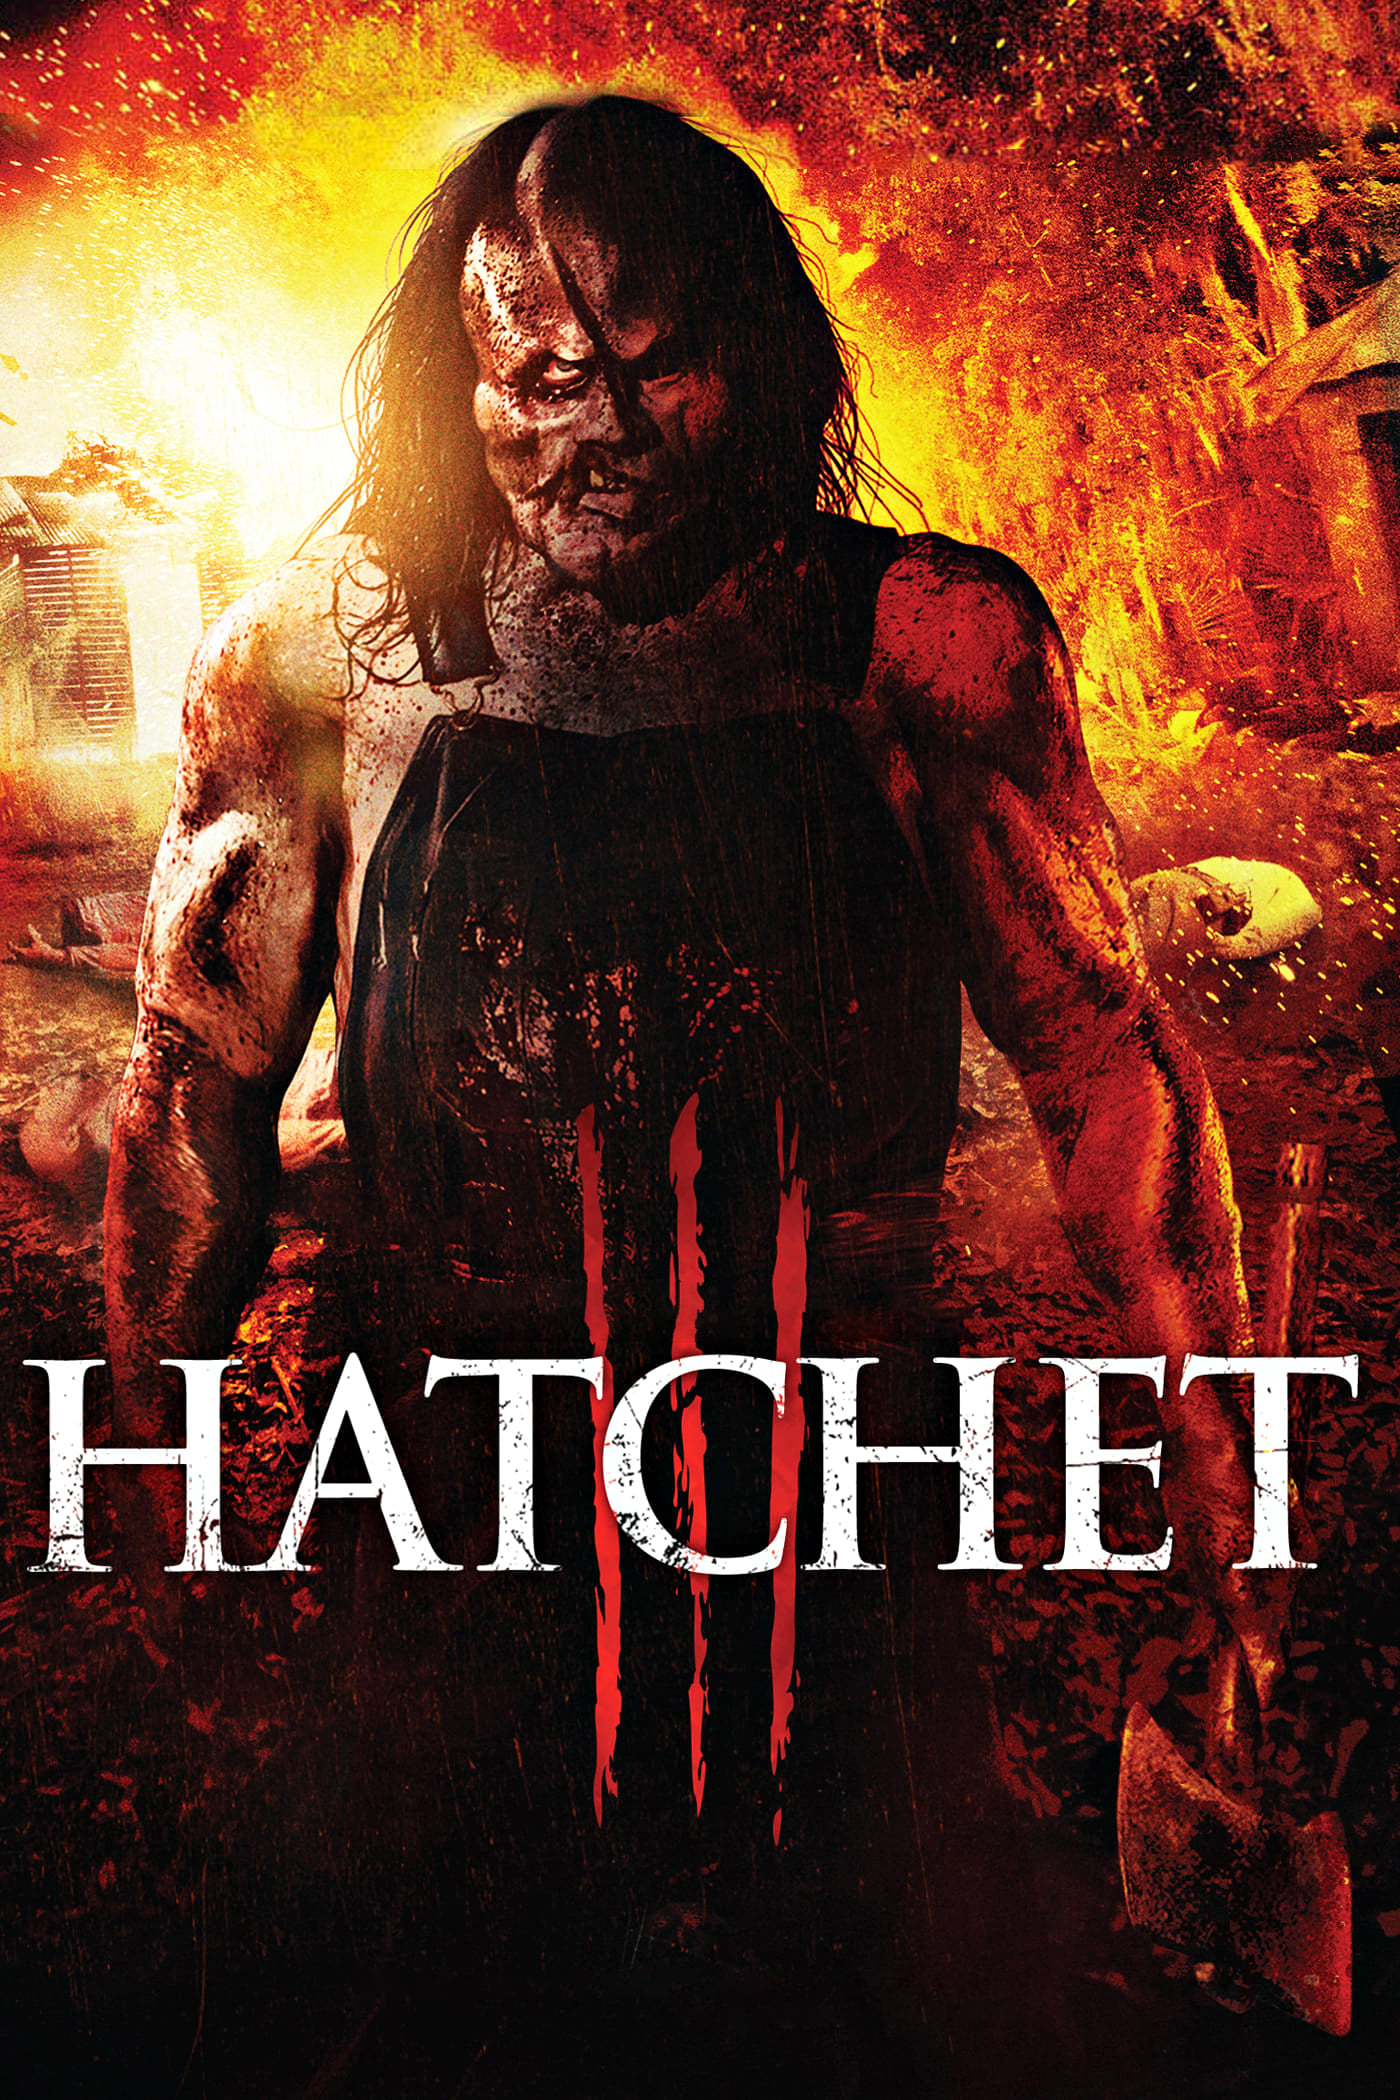 Hatchet III [Sub-ITA] [HD] (2013)